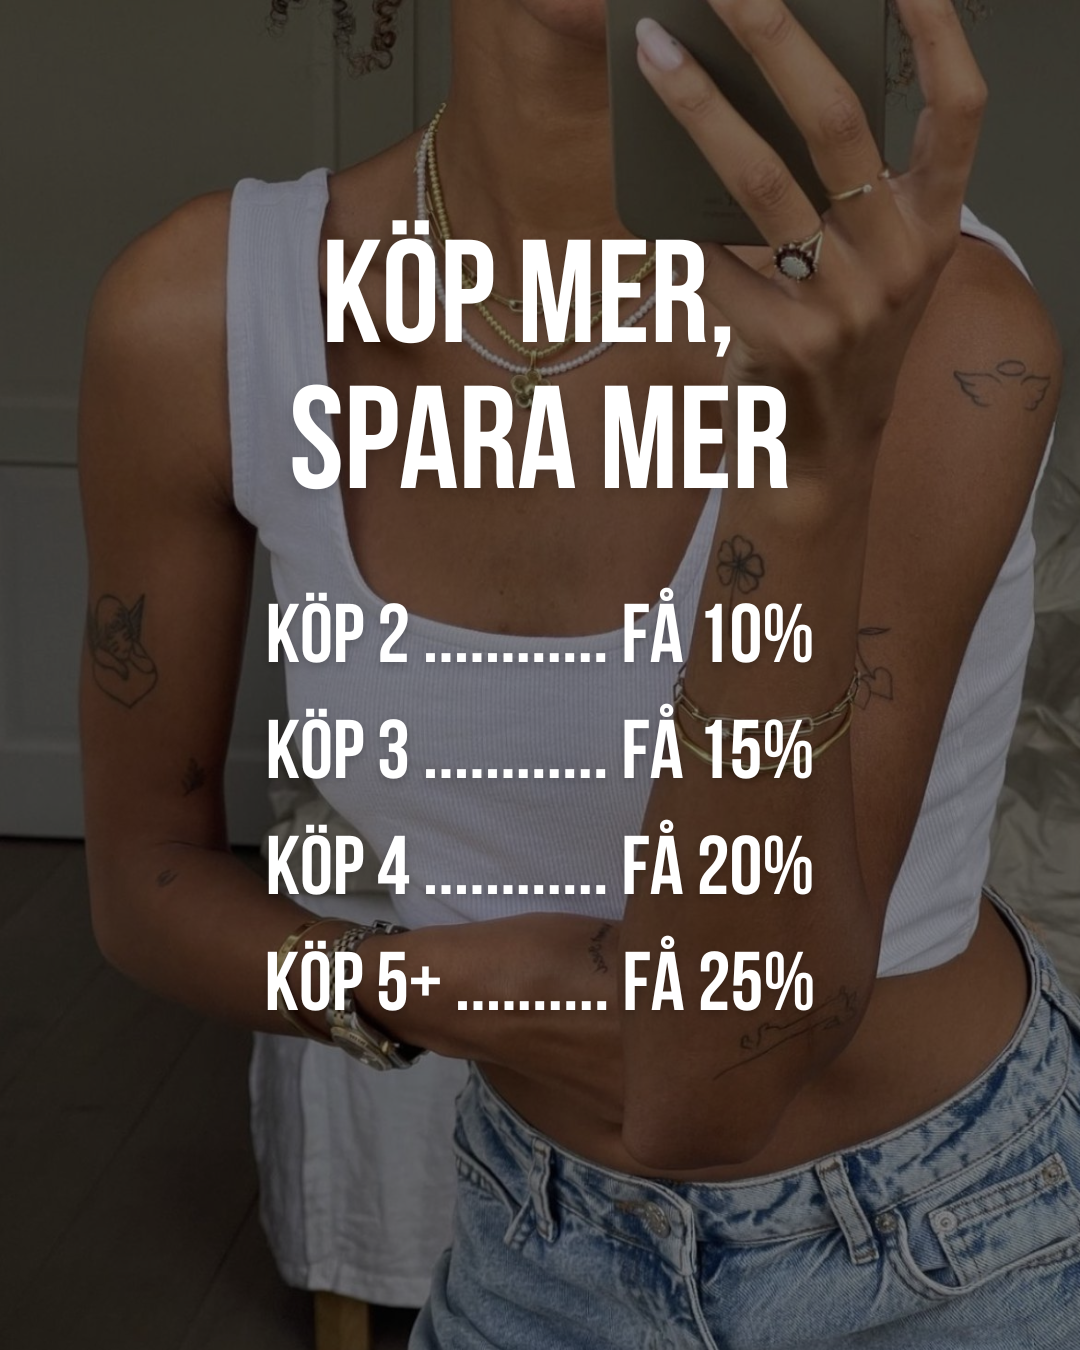 Kop_mer_spara_mer_1.png